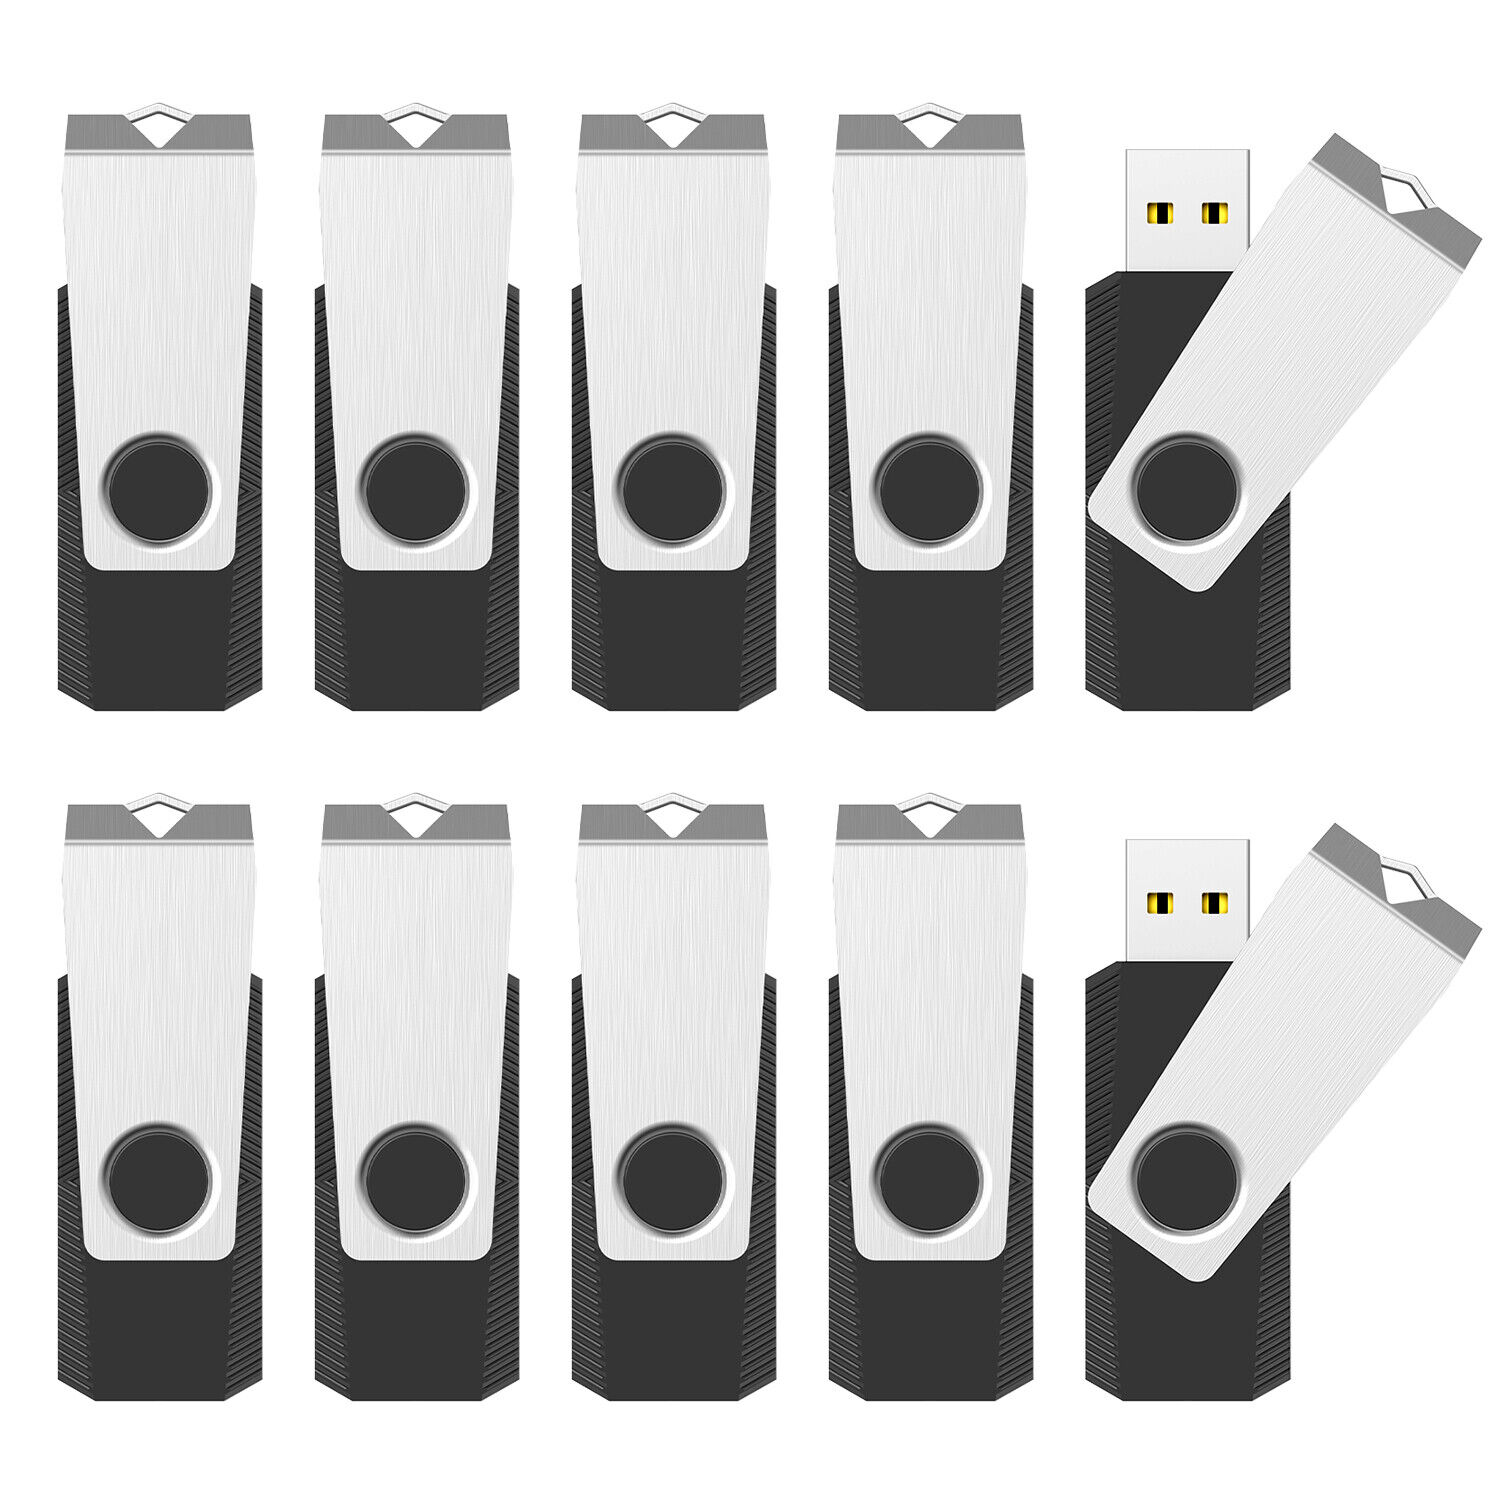 USB 2.0 Metal Swivel Flash Drives Lot 10-100pcs 1GB 2GB 4GB 8GB 16GB 32GB 64GB